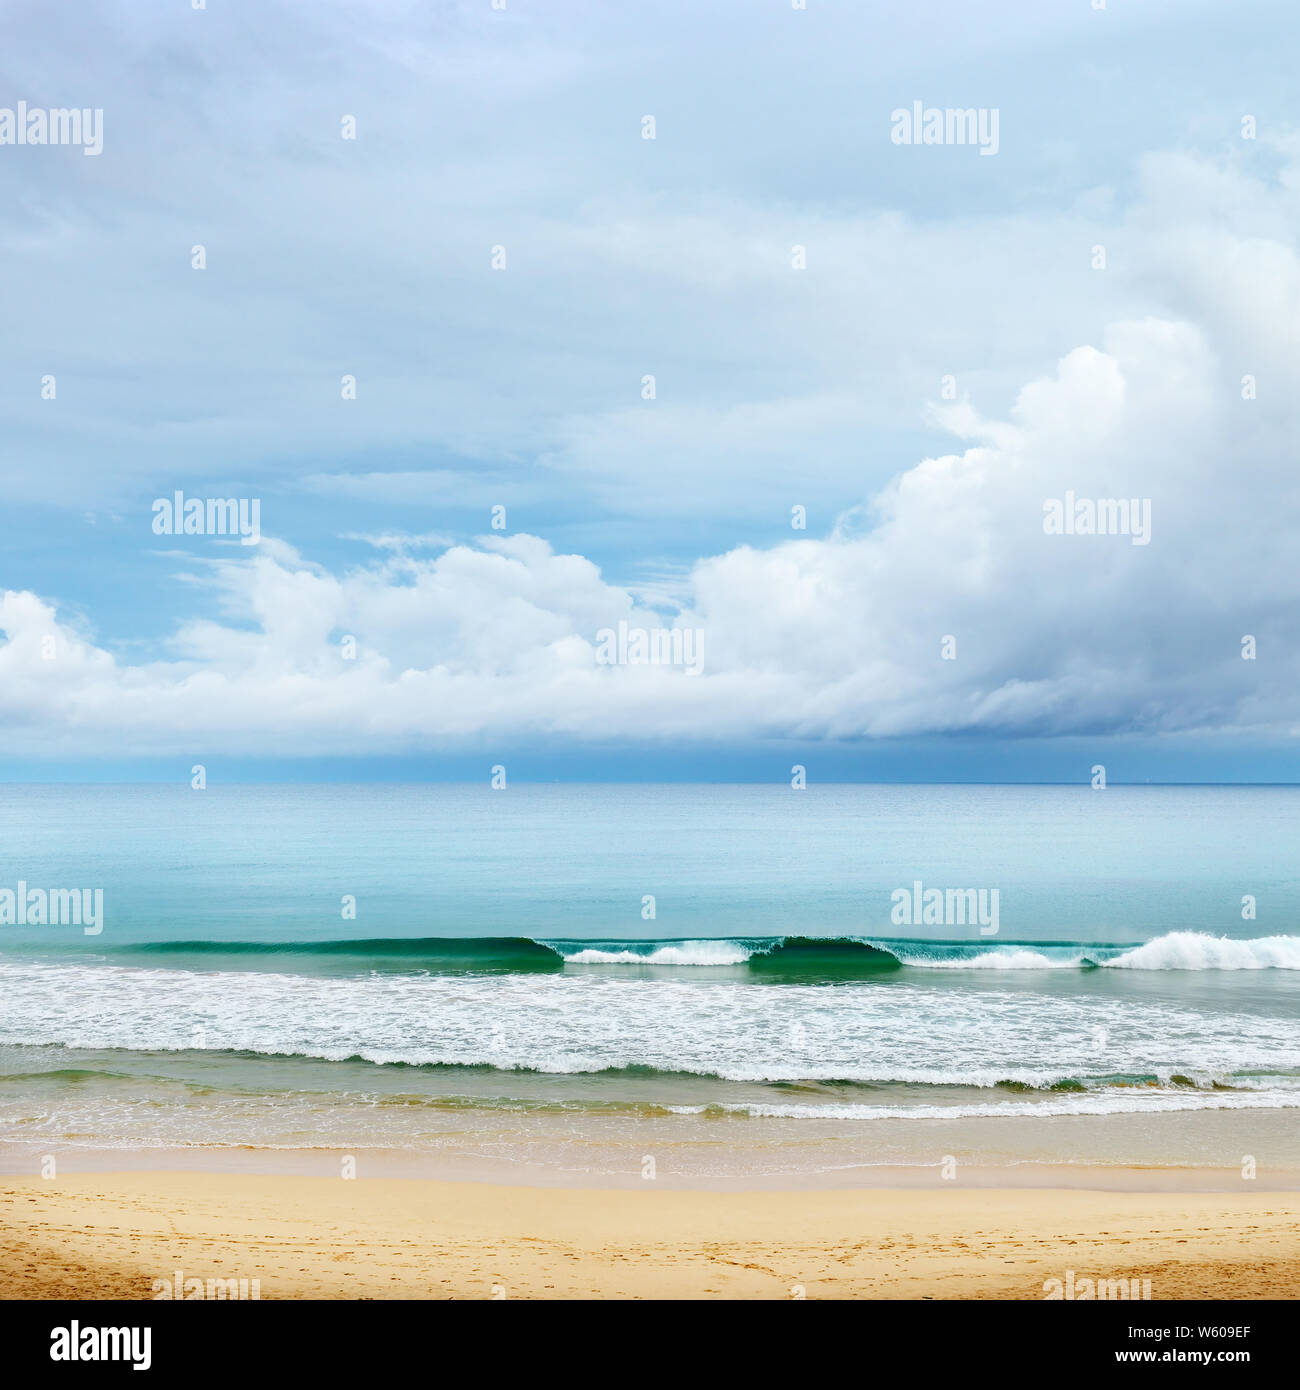 La costa de la playa de arena, olas altas y las nubes blancas en el cielo azul Foto de stock